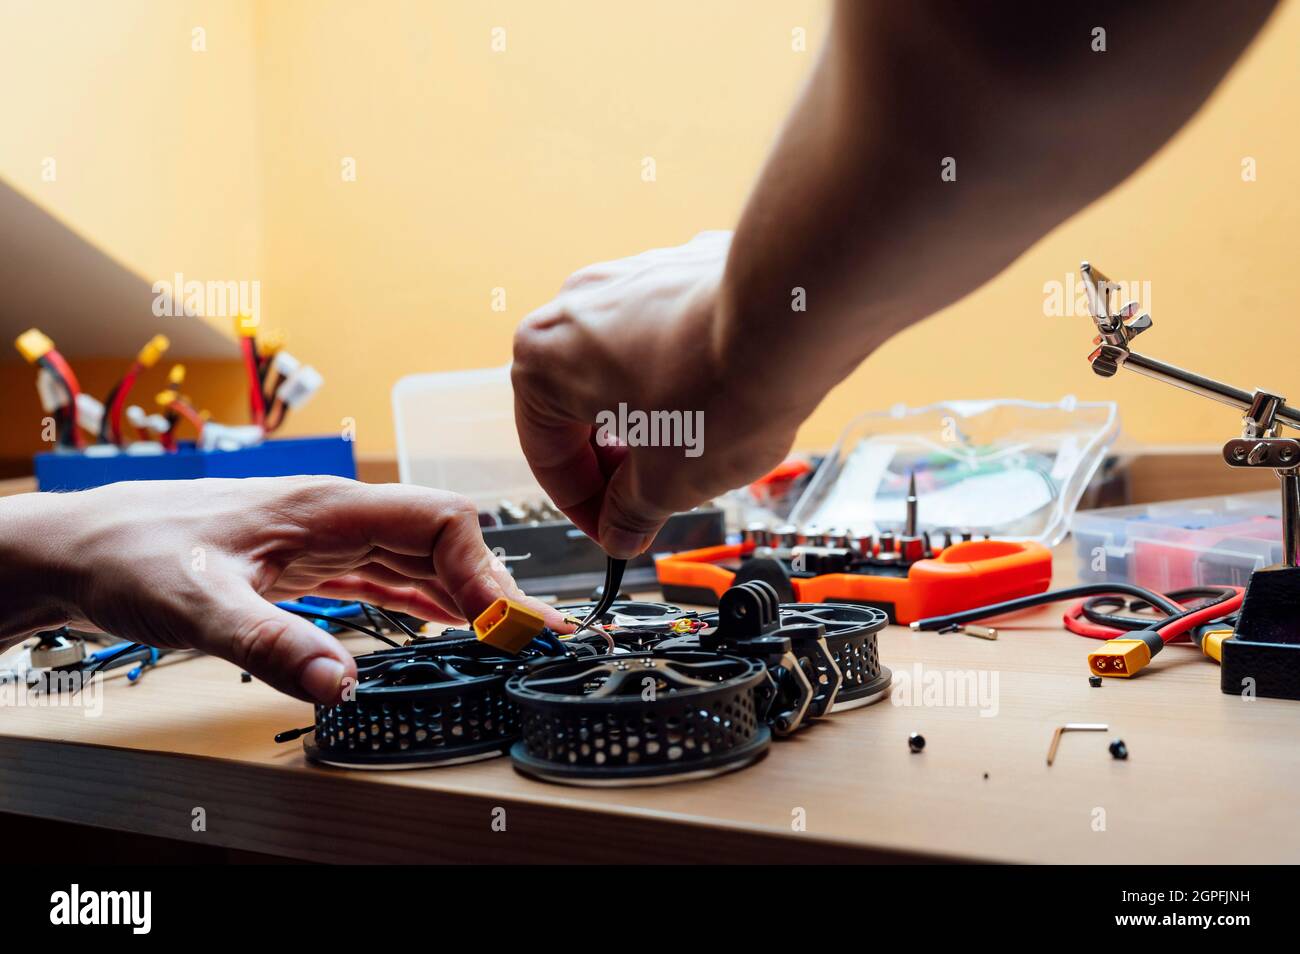 Mann repariert Eine Drohne.Ingenieur repariert eine Drohne zu Hause Stockfoto